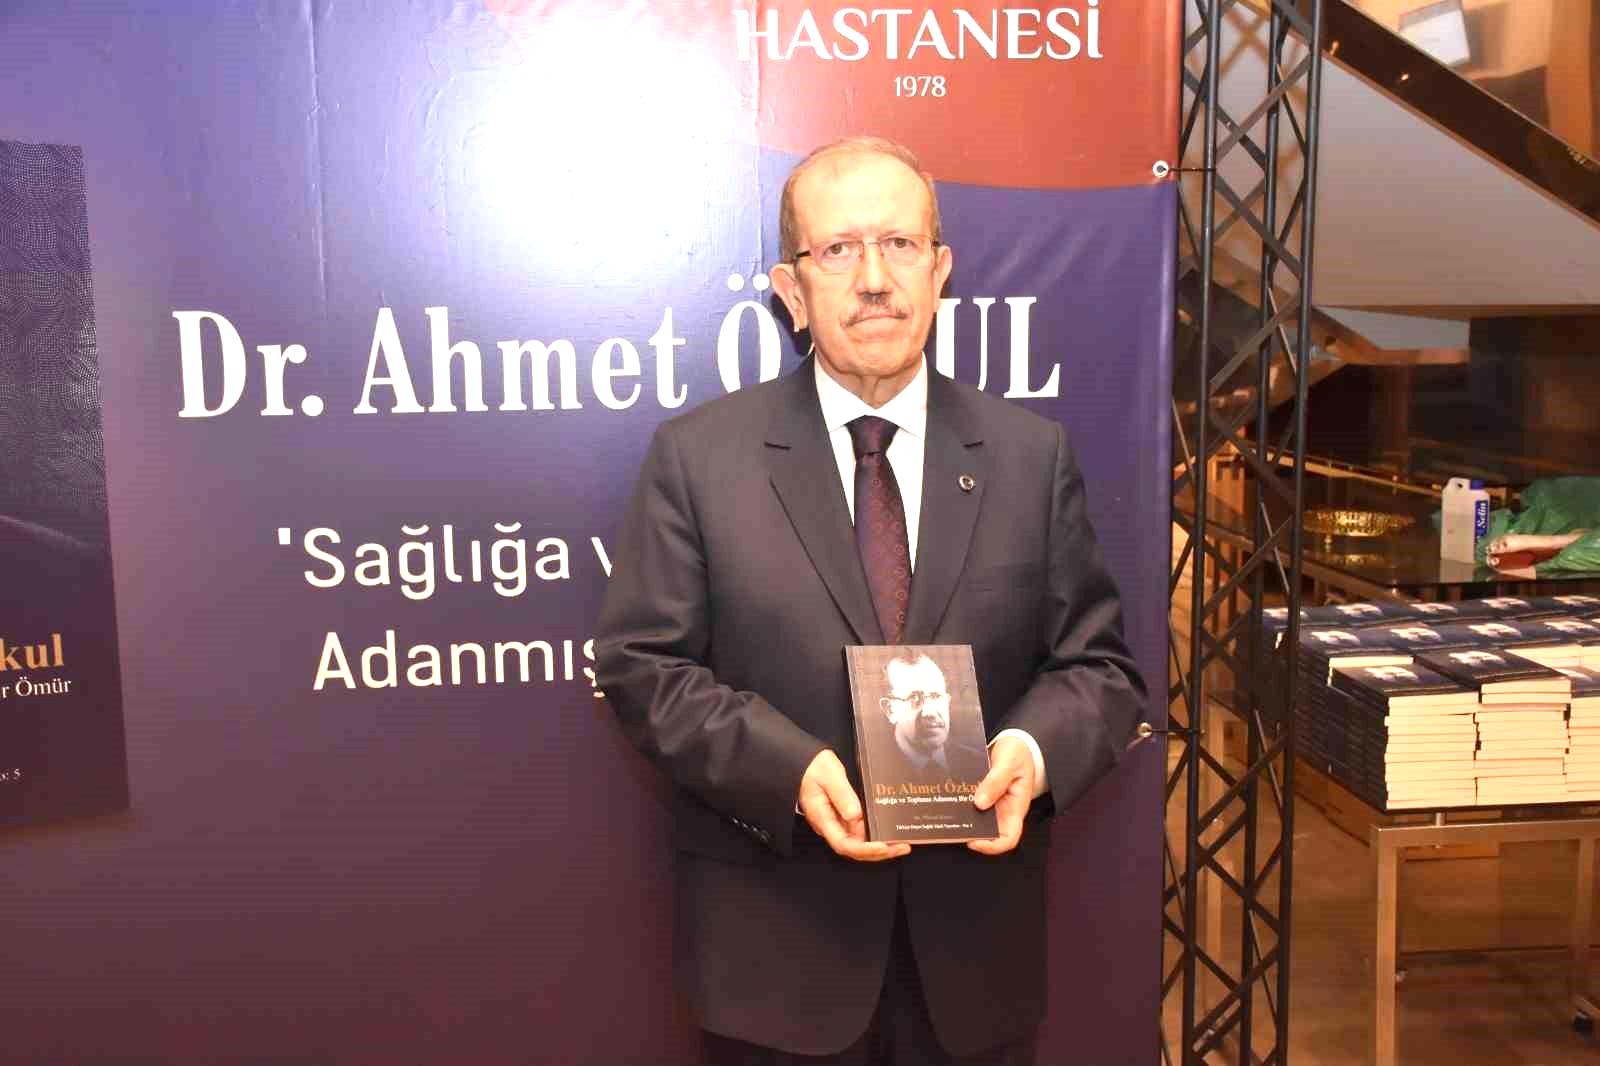 Dr. Ahmet Özkul tecrübelerini kitapta topladı